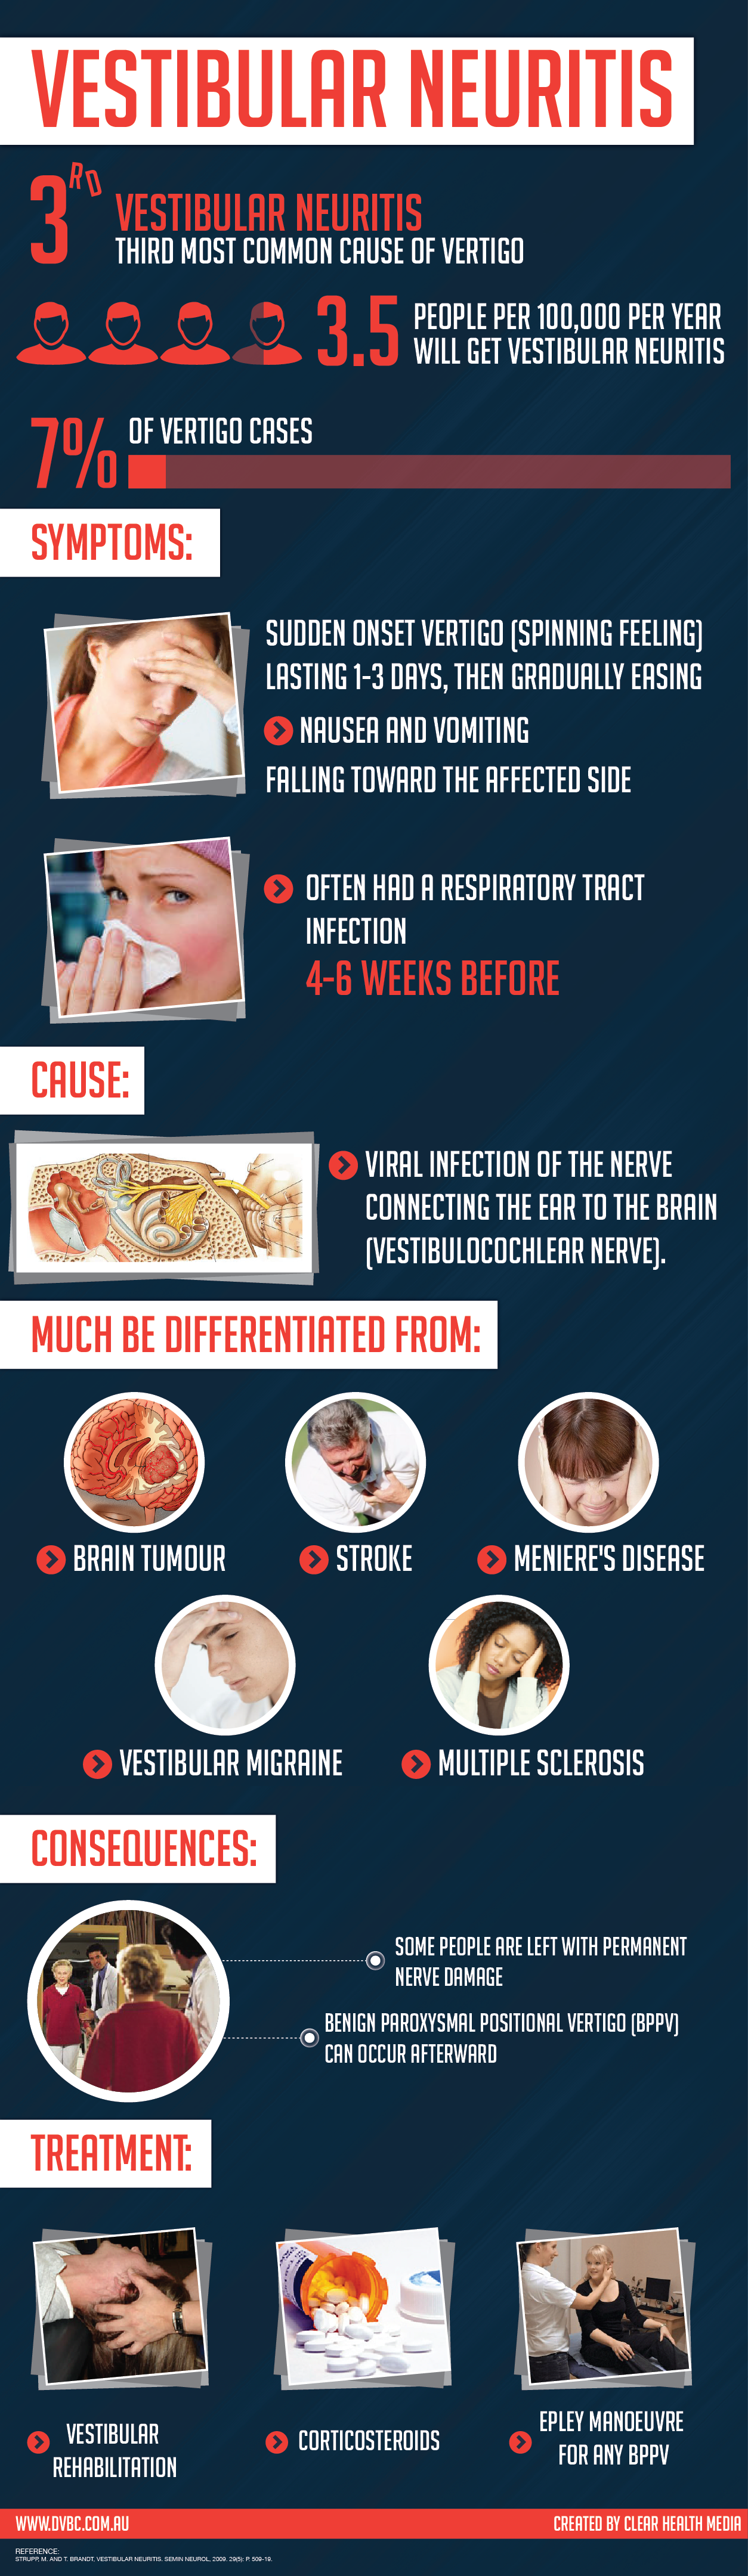 Vestibular Neuritis Infographic